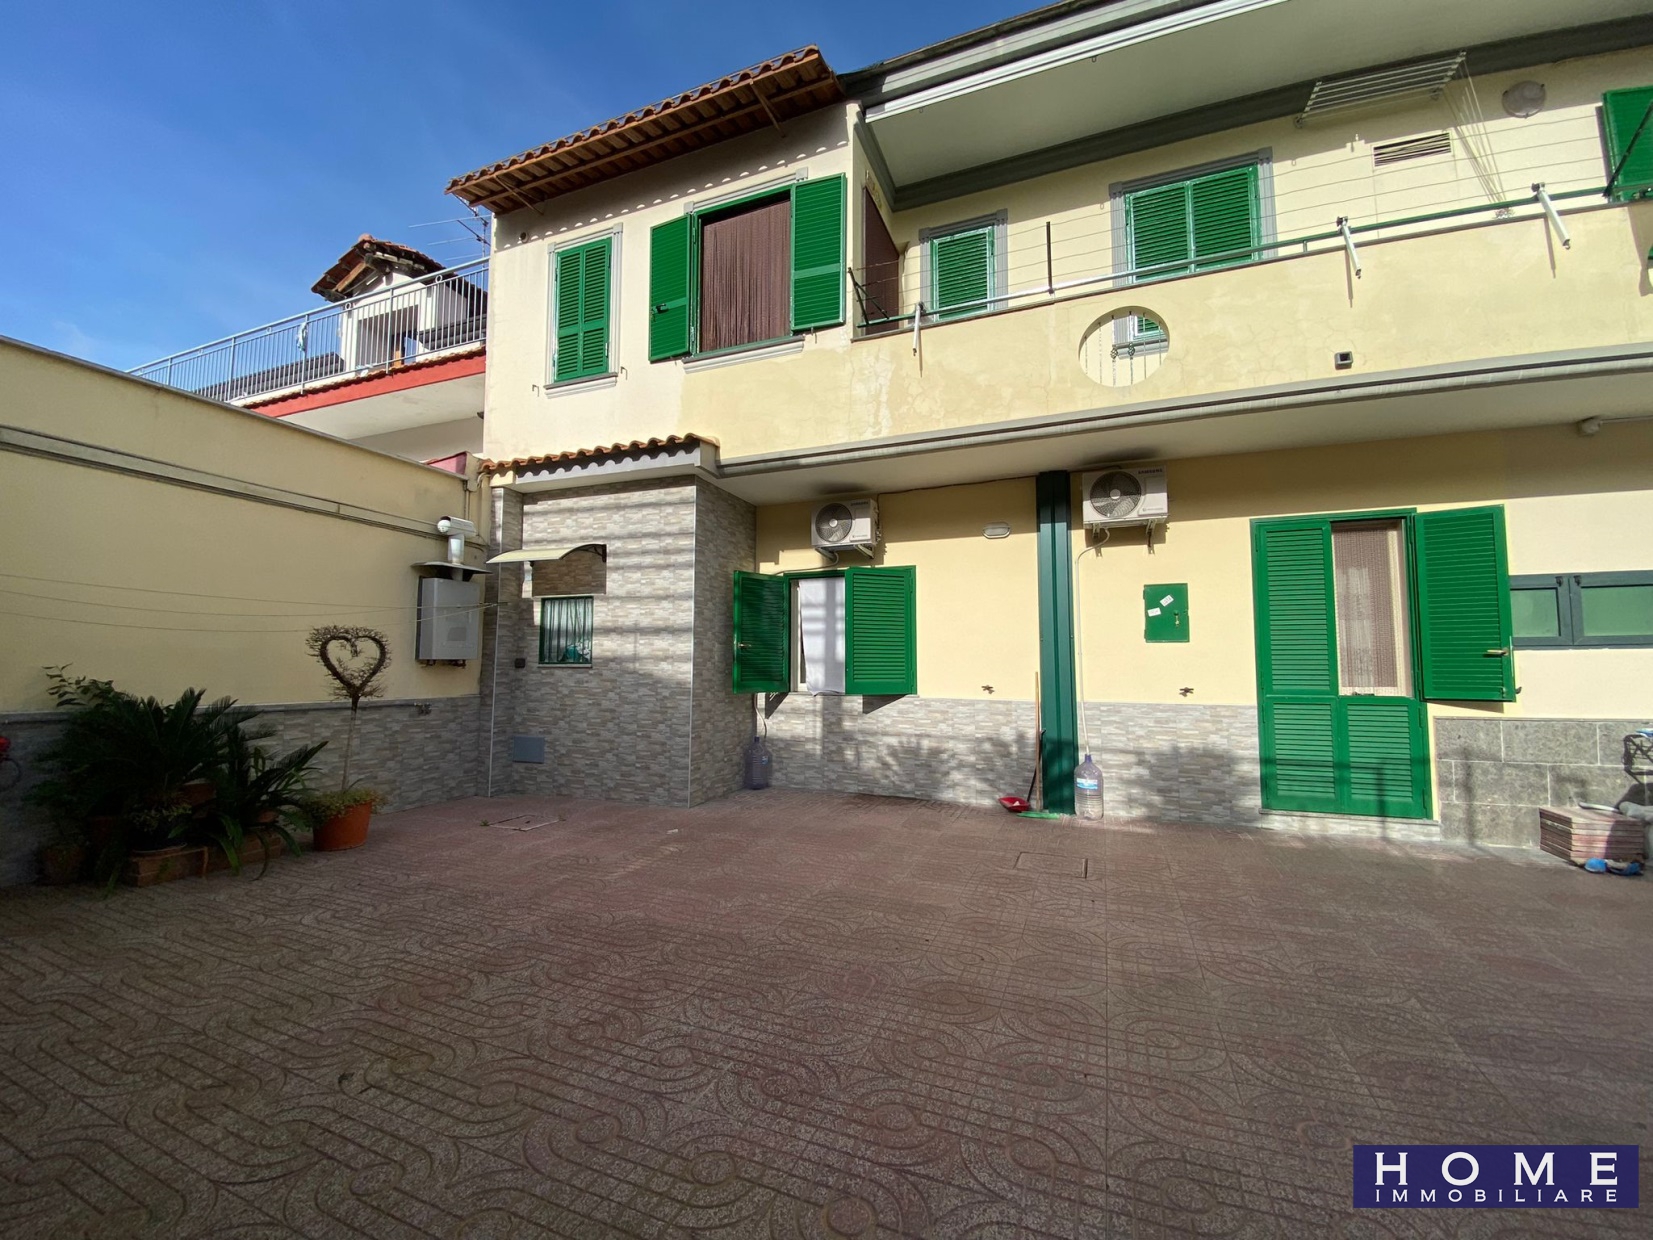 Appartamento in vendita a Frattaminore, 4 locali, prezzo € 135.000 | PortaleAgenzieImmobiliari.it